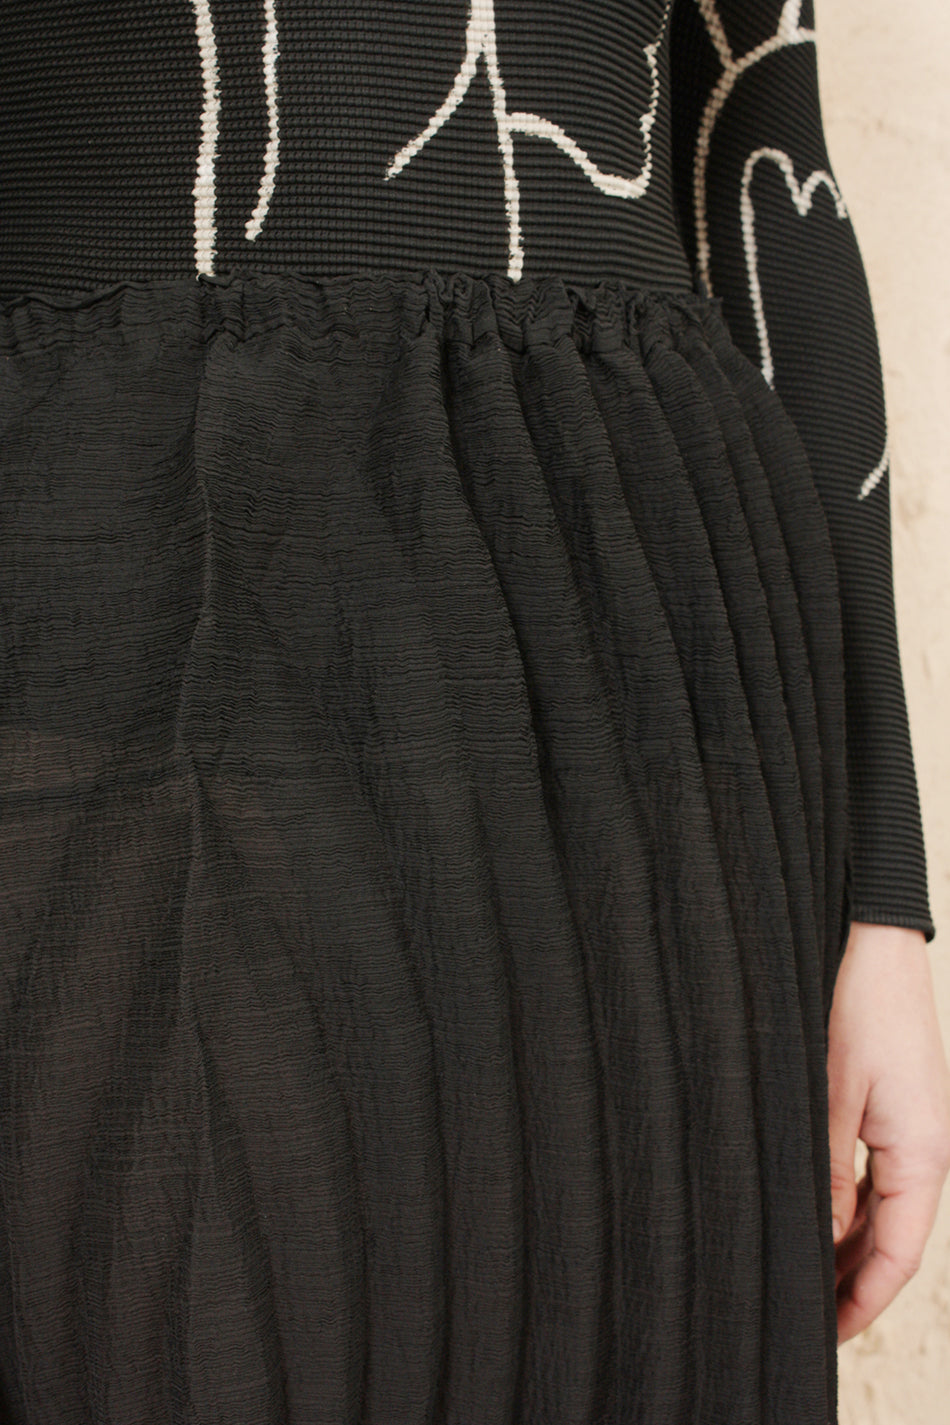 Swirl Crepe Skirt Black